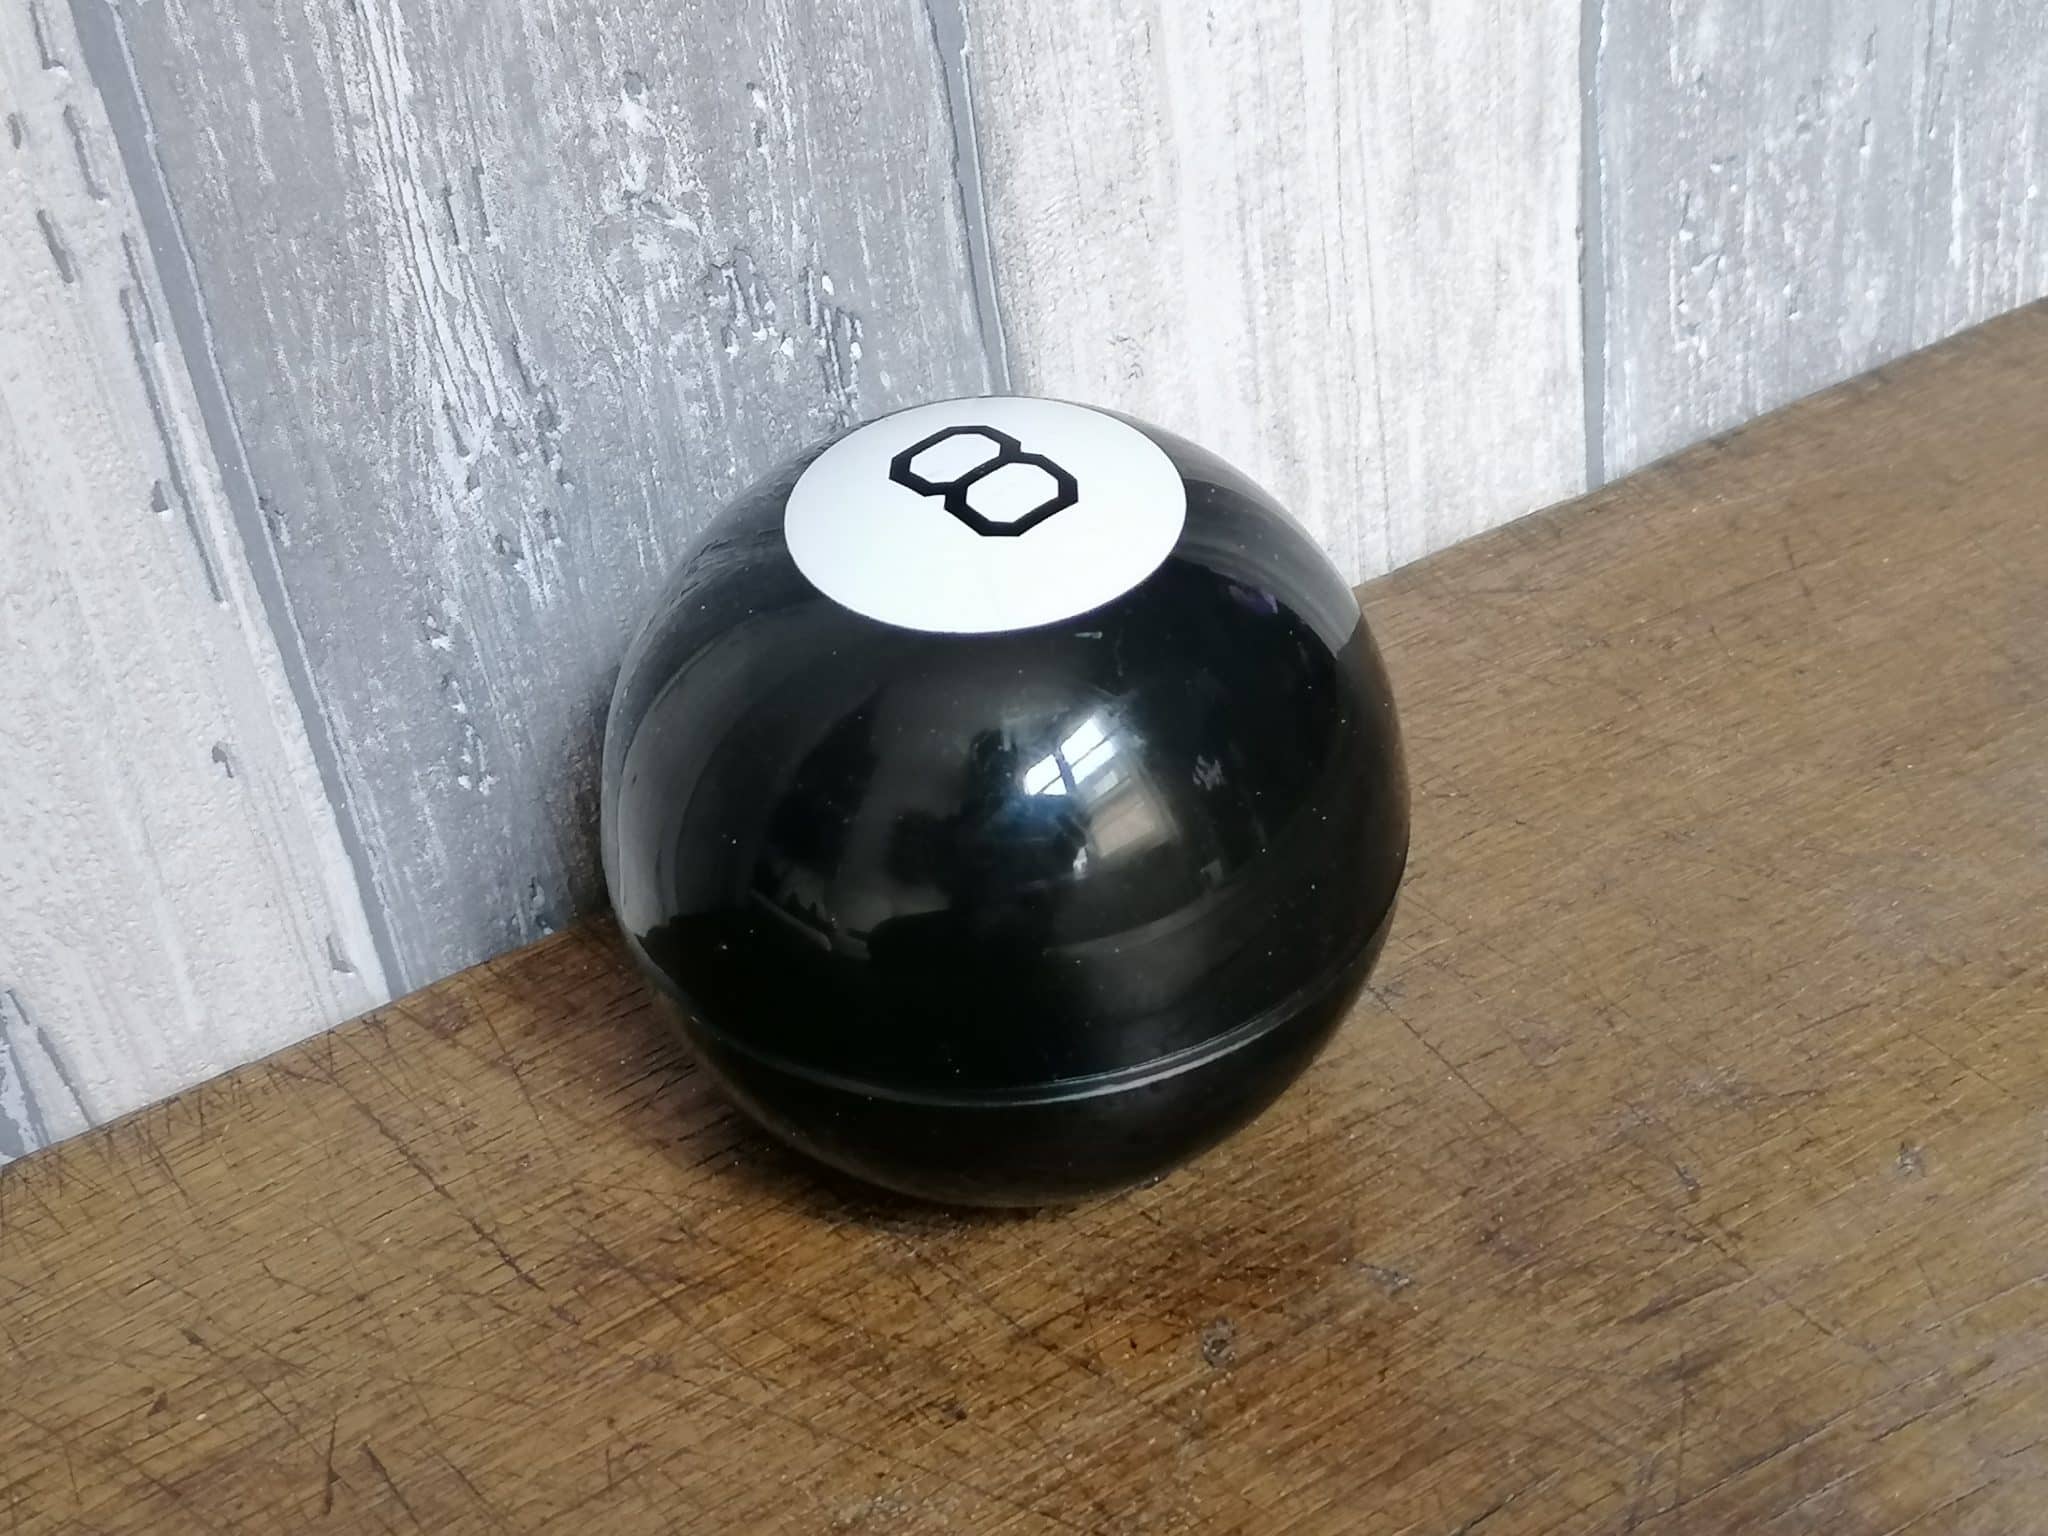 Boule magiques 8-ball